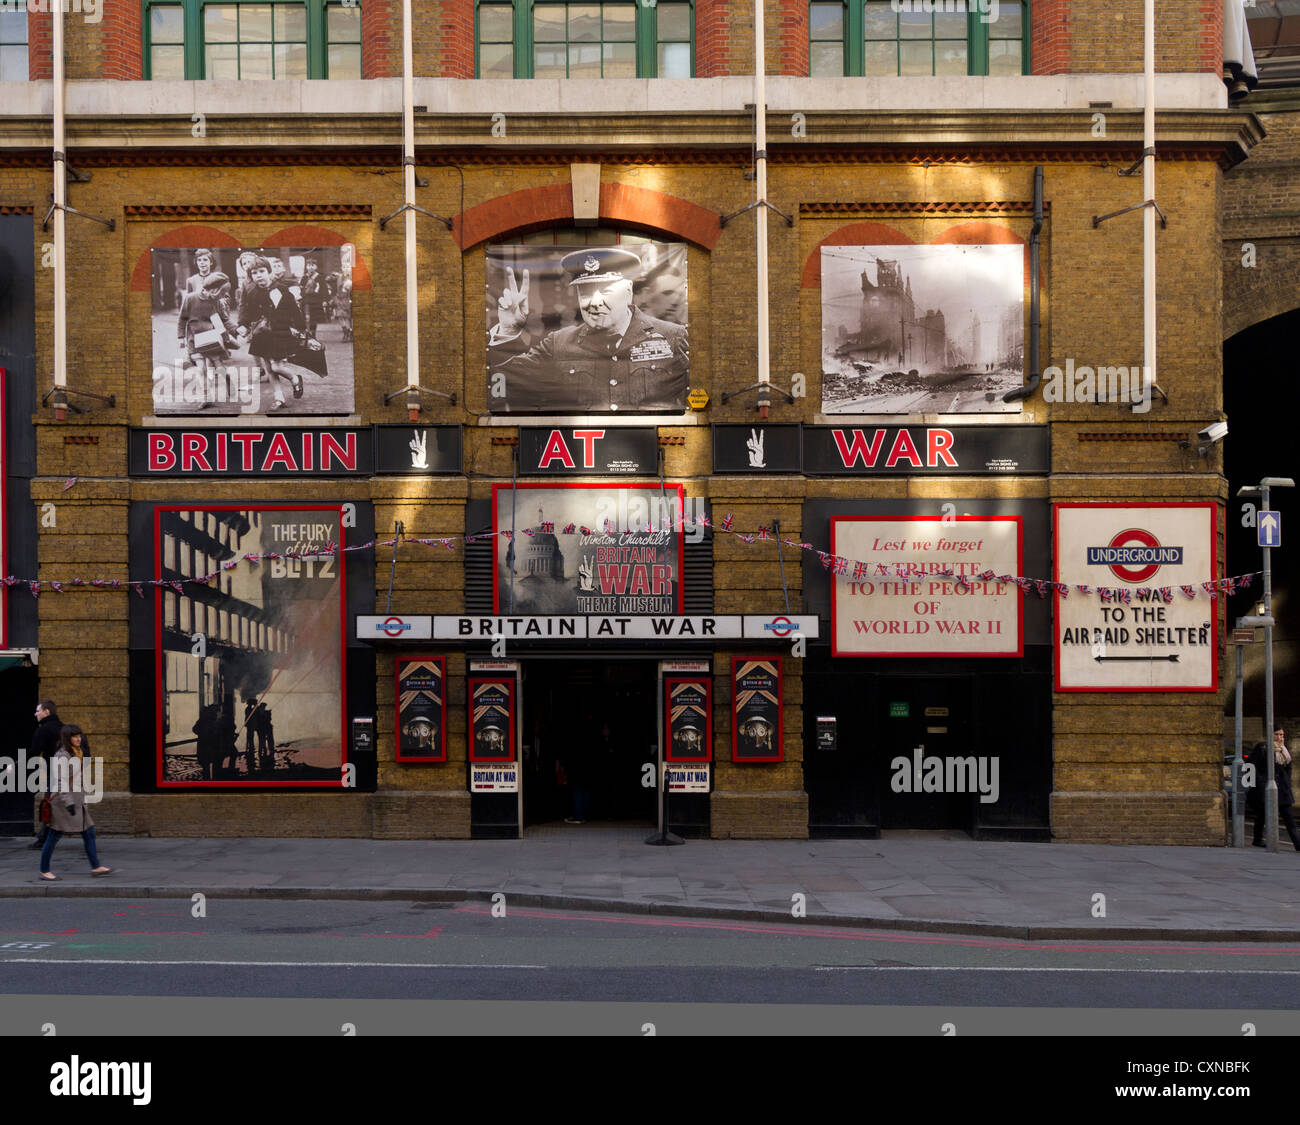 Großbritannien am Krieg Ausstellung, London Bridge, London Stockfoto